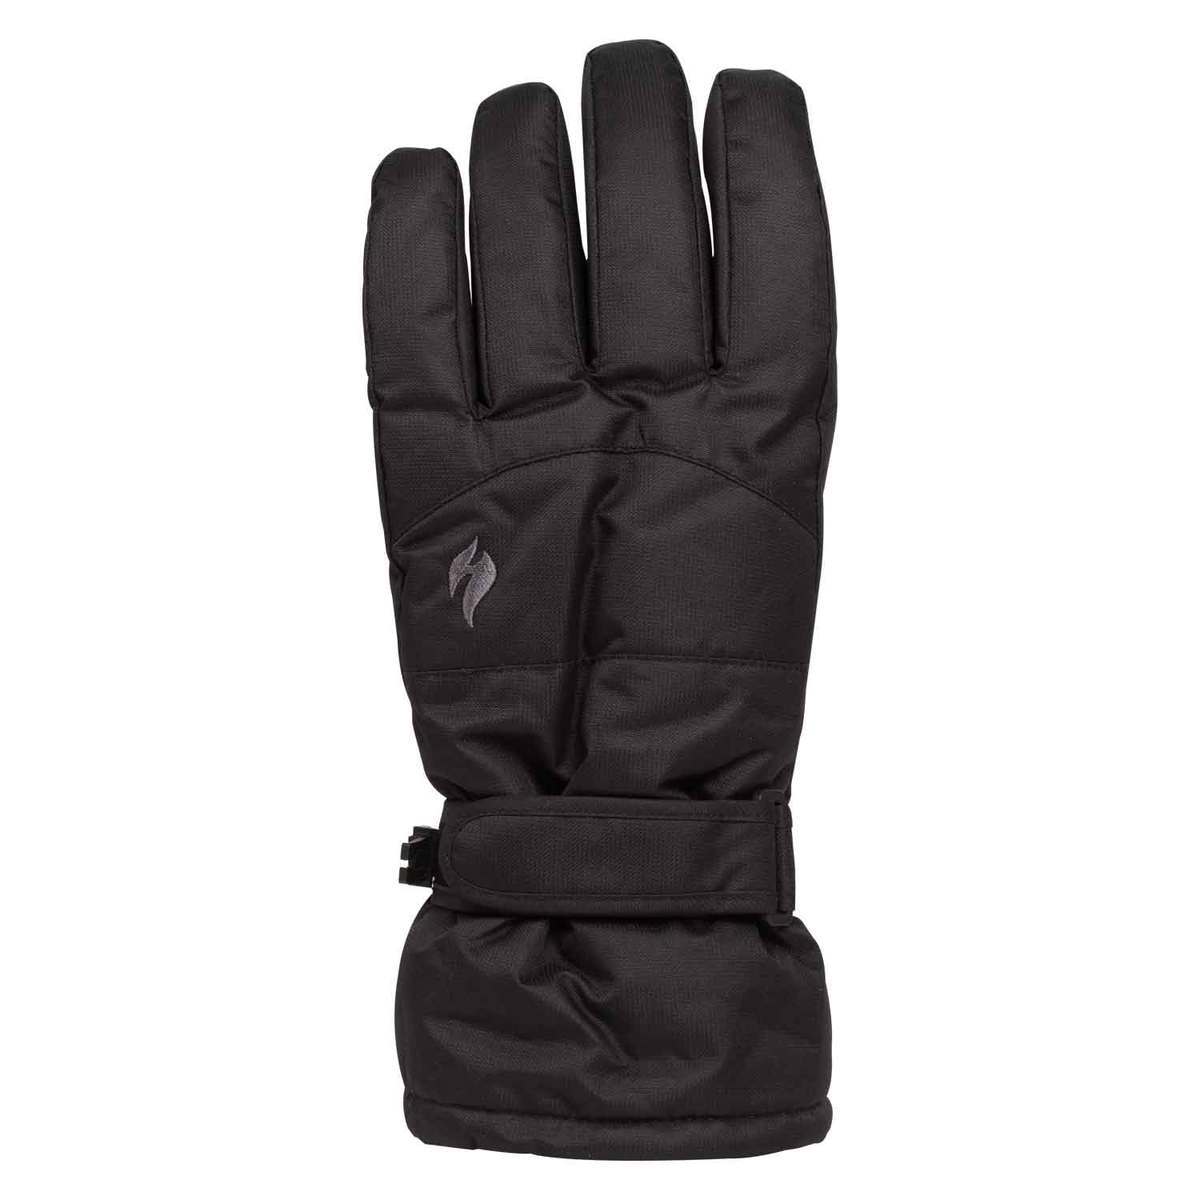 https://www.sportsmans.com/medias/heat-holders-womens-high-performance-winter-gloves-black-ml-1625899-1.jpg?context=bWFzdGVyfGltYWdlc3w1MTQyNHxpbWFnZS9qcGVnfGltYWdlcy9oOTIvaGM5Lzk1MTA2Mjg5MTcyNzguanBnfDc5MGY4MjEzNWM5ZDcxZmRjYjc0MjZhNjFmMjA3NDI0NzE3MGQwNmE1ZDk0MDUxMDAxYzU3MzI5NjFiNTExZWQ